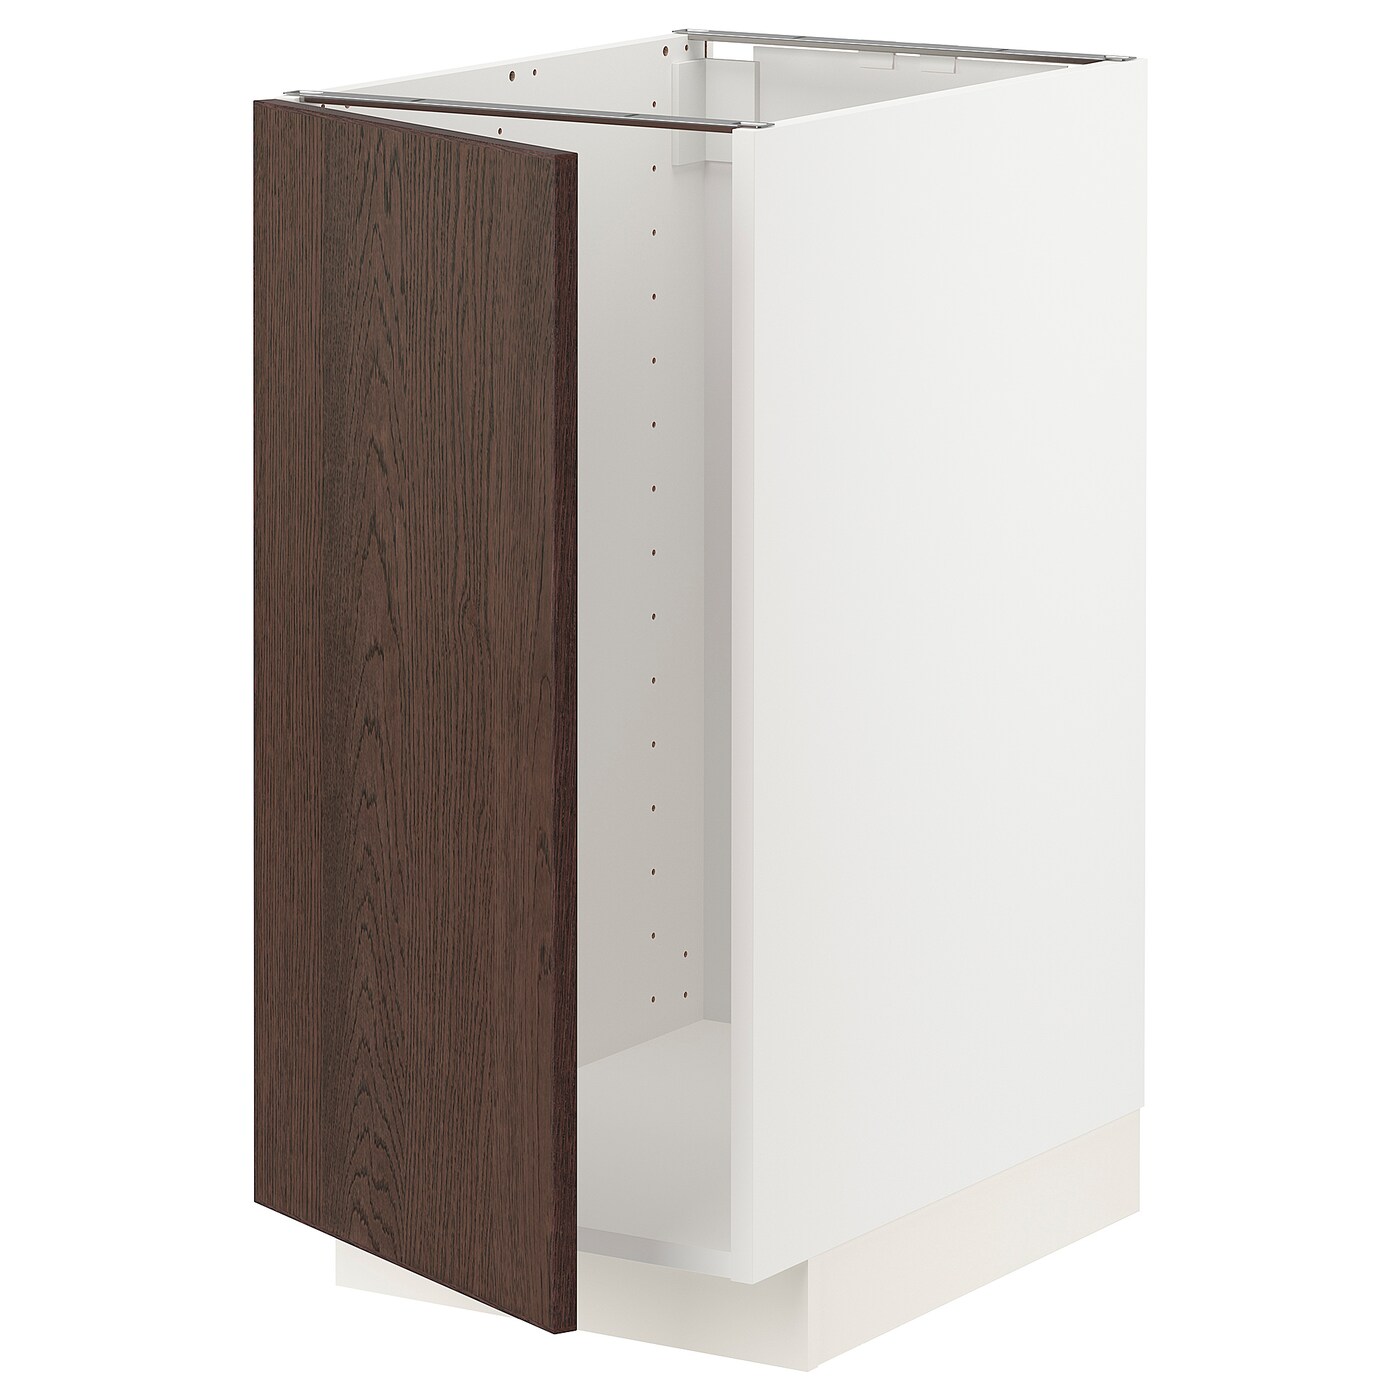 Напольный кухонный шкаф  - IKEA METOD, 88x62x40см, белый/коричневый, МЕТОД ИКЕА